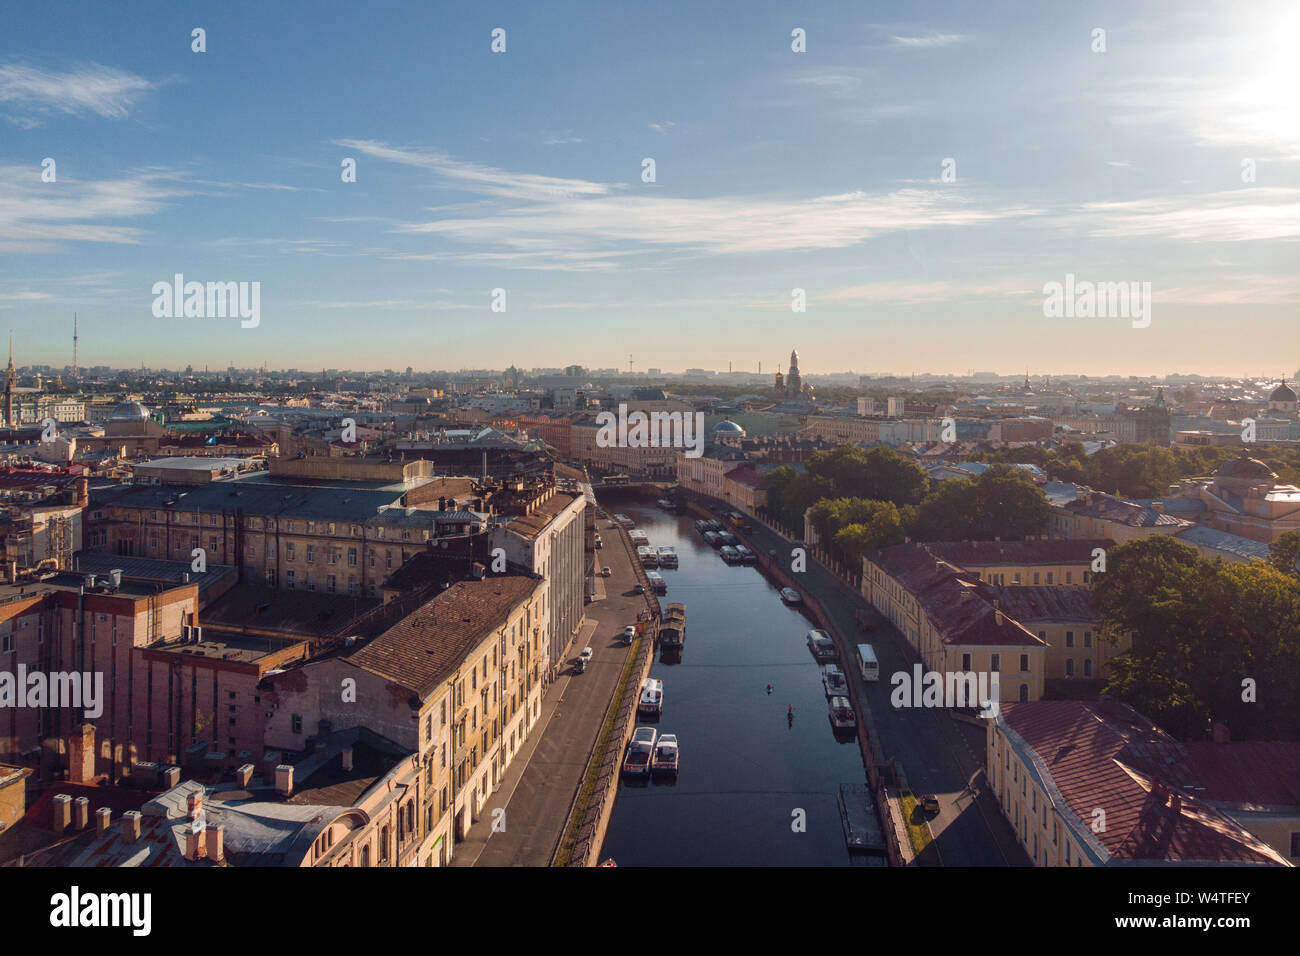 Panorama de Saint Petersburg, sur la rivière Moïka la photo aérienne. Matin, vue sur les districts centraux de Saint-Pétersbourg, en Russie. Banque D'Images